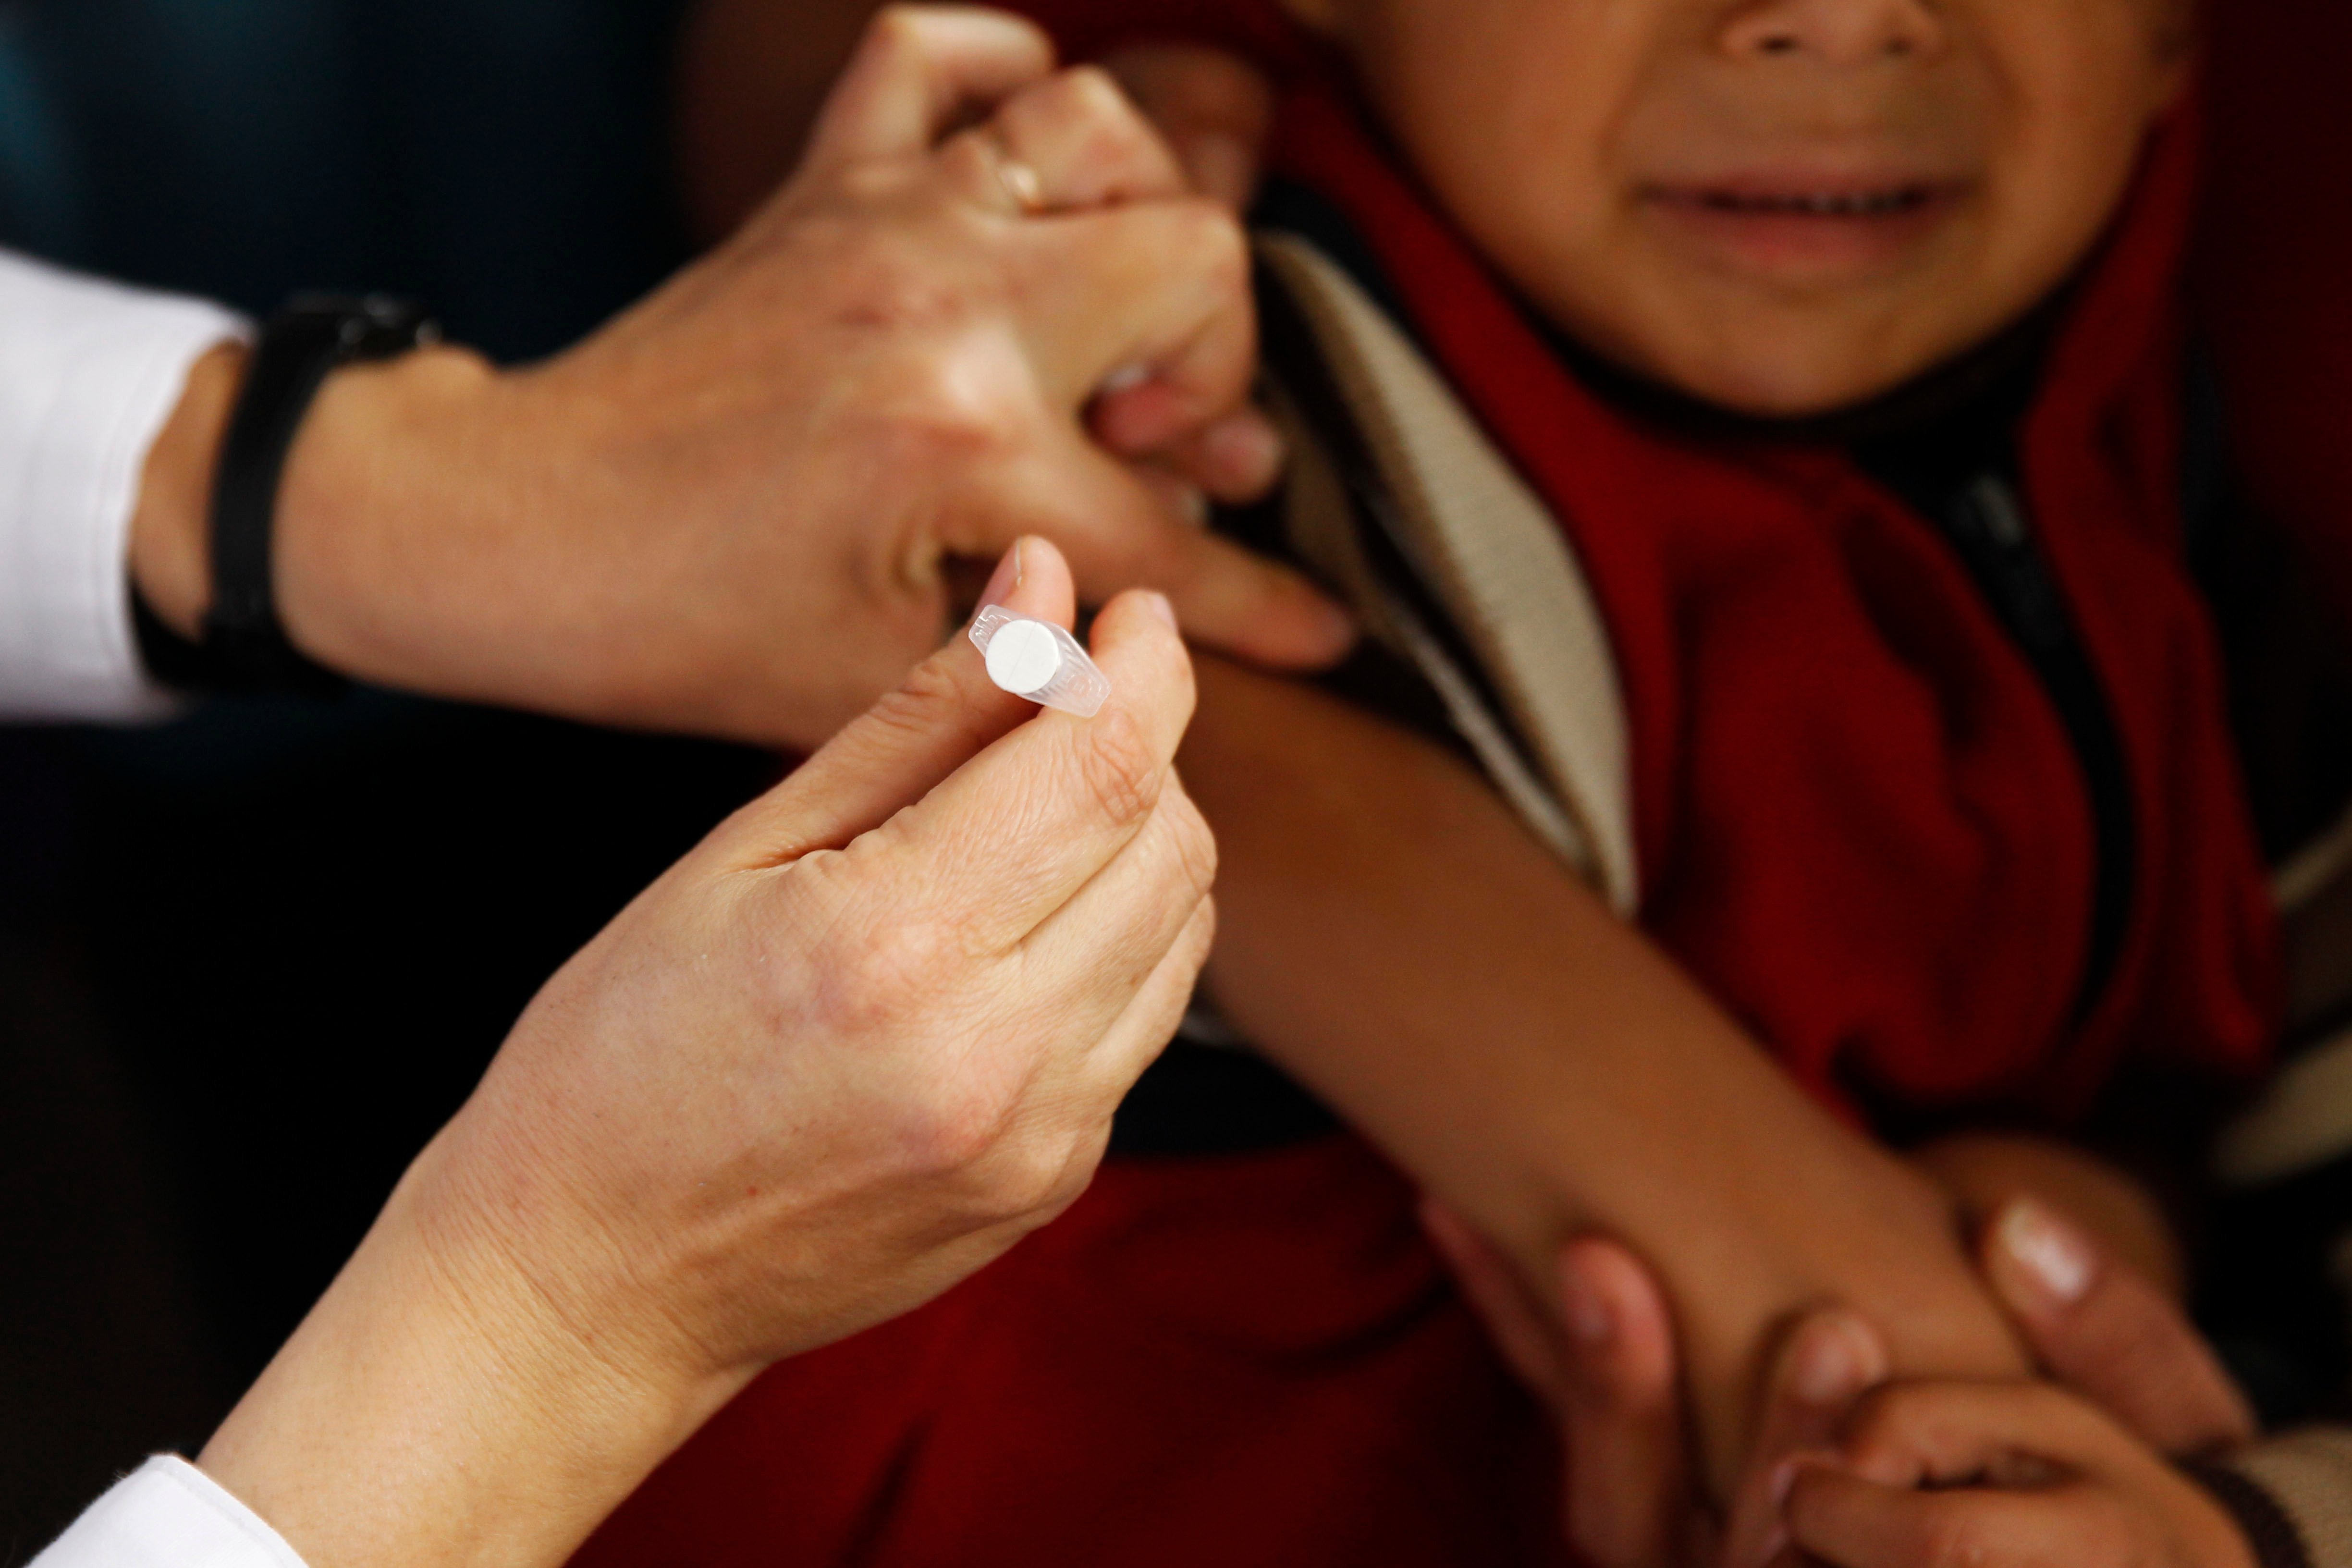 158 niños fueron vacunados por error con un quinto de dosis de Sinovac en vez de la dosis pediátrica de Pfizer en Uruguay

EFE/Javier Roibás Veiga
